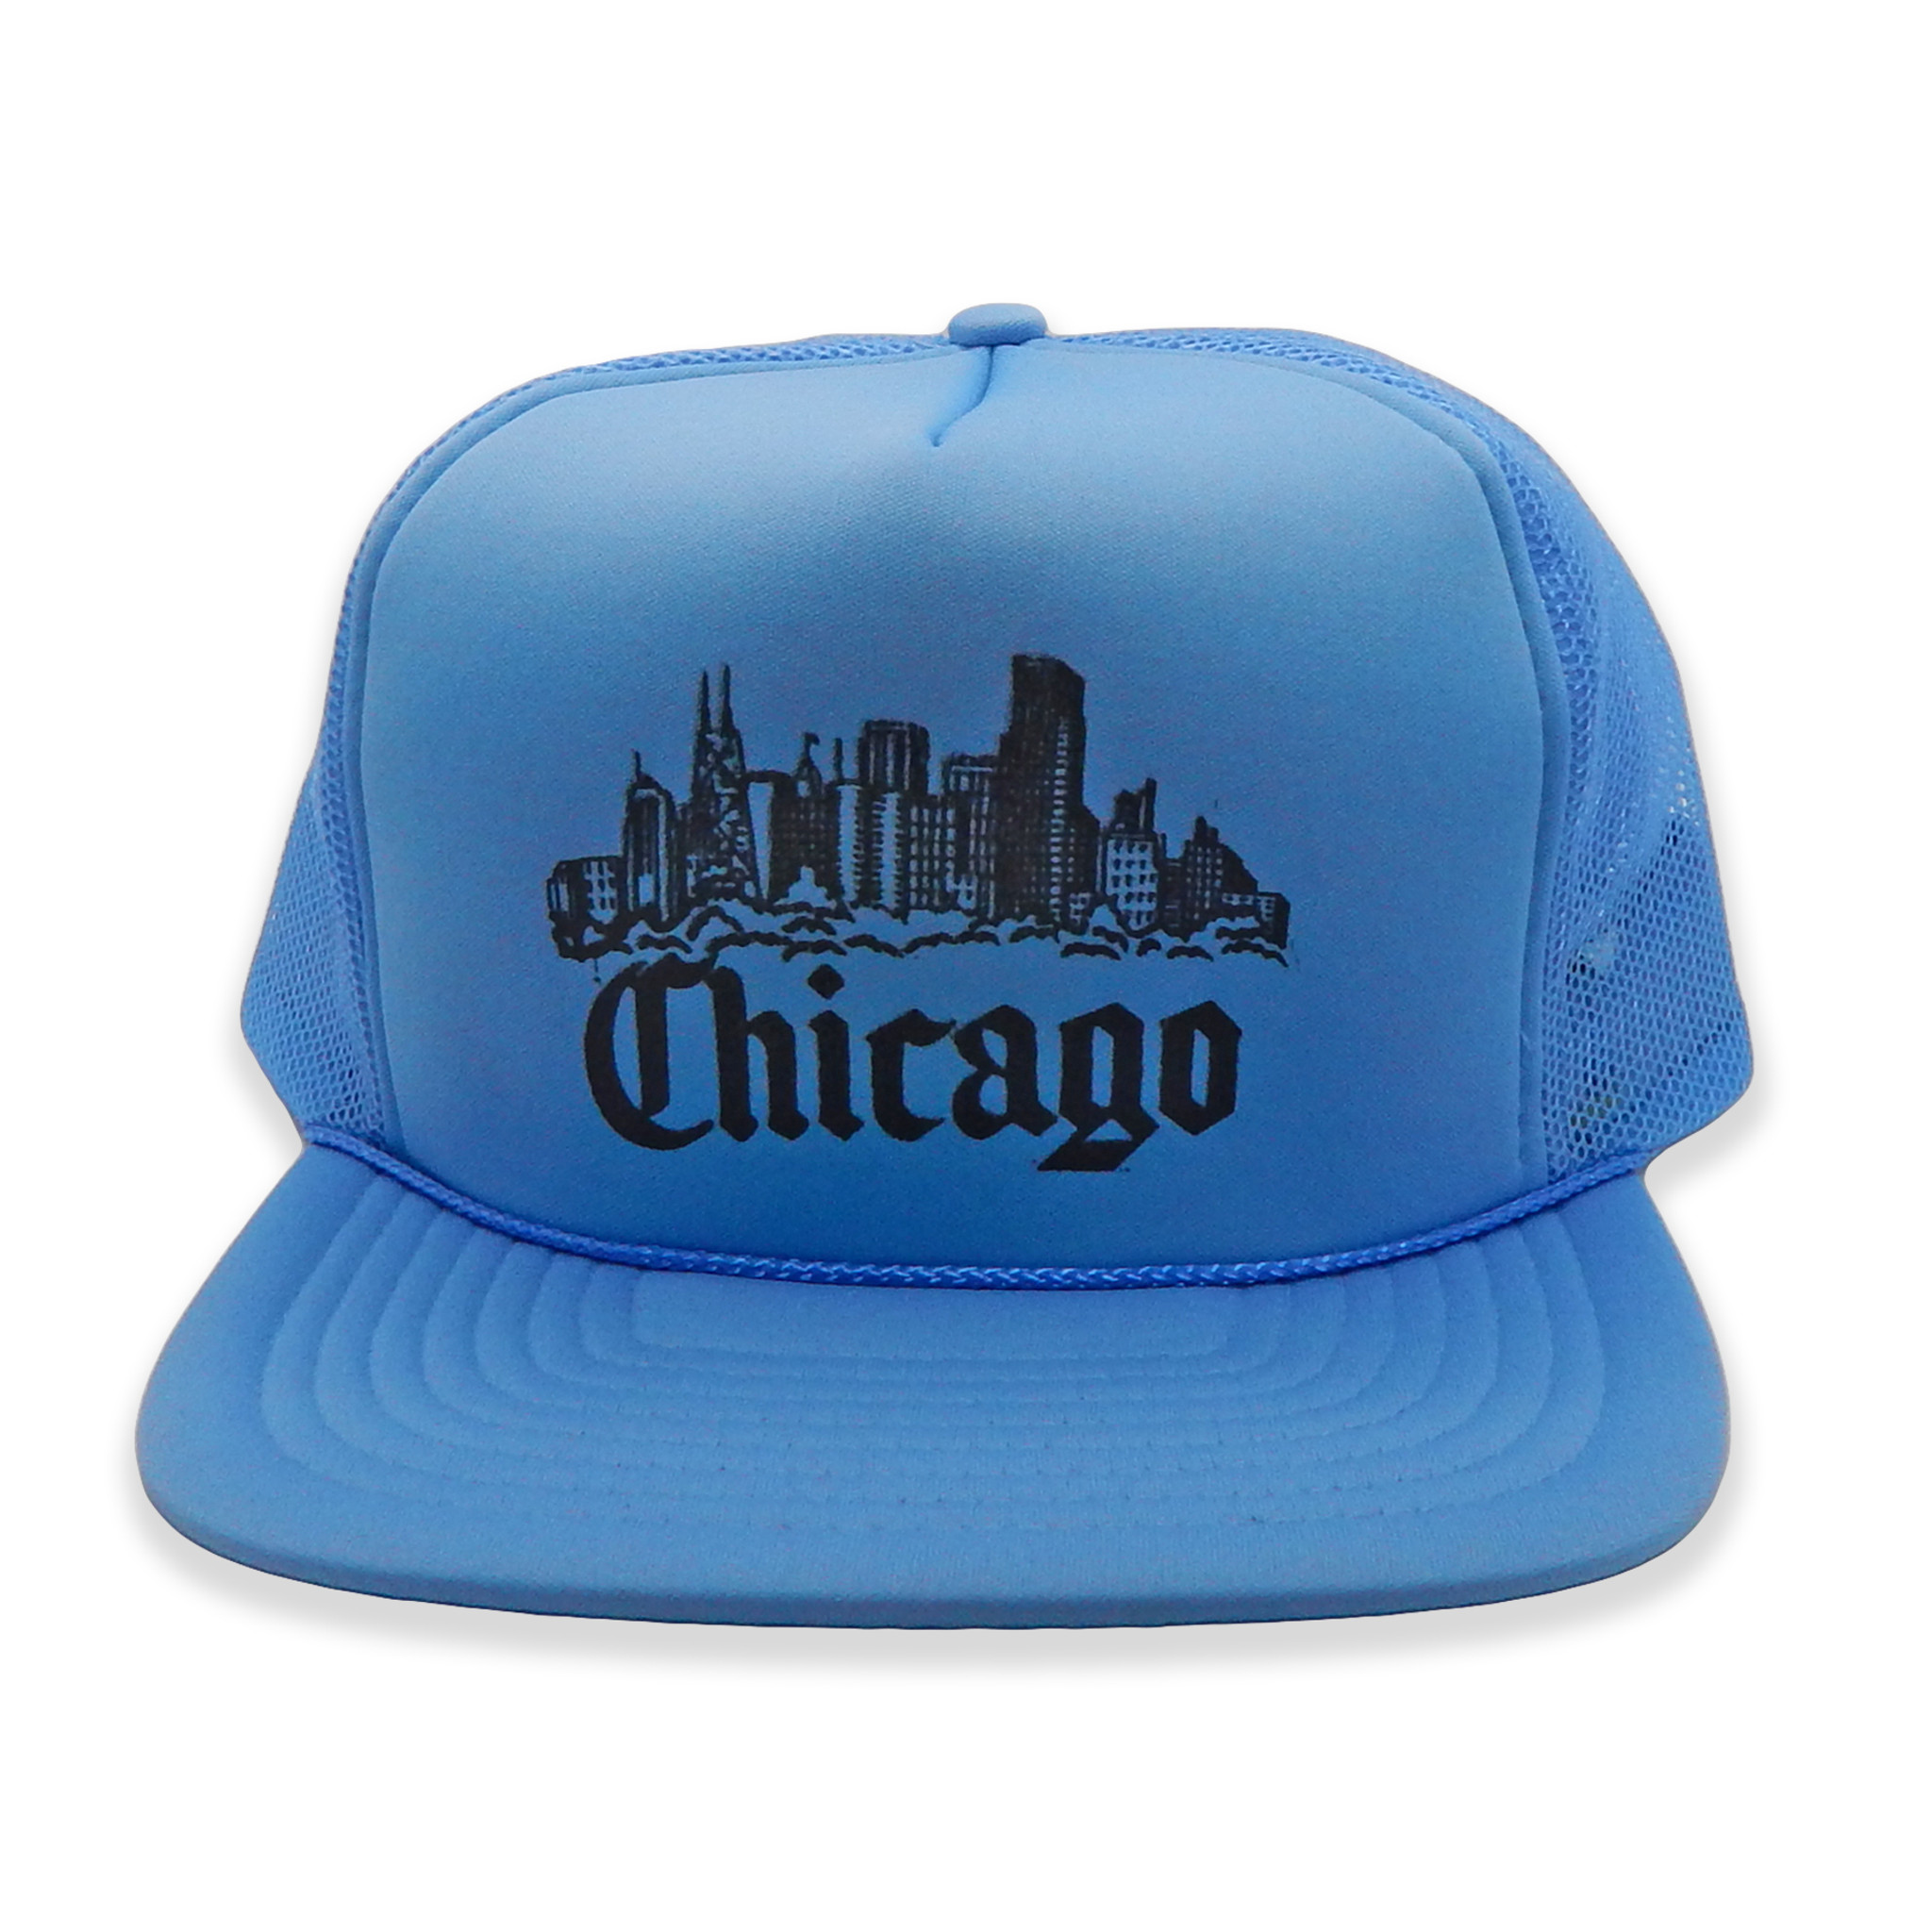 Vintage Chicago Trucker Hat